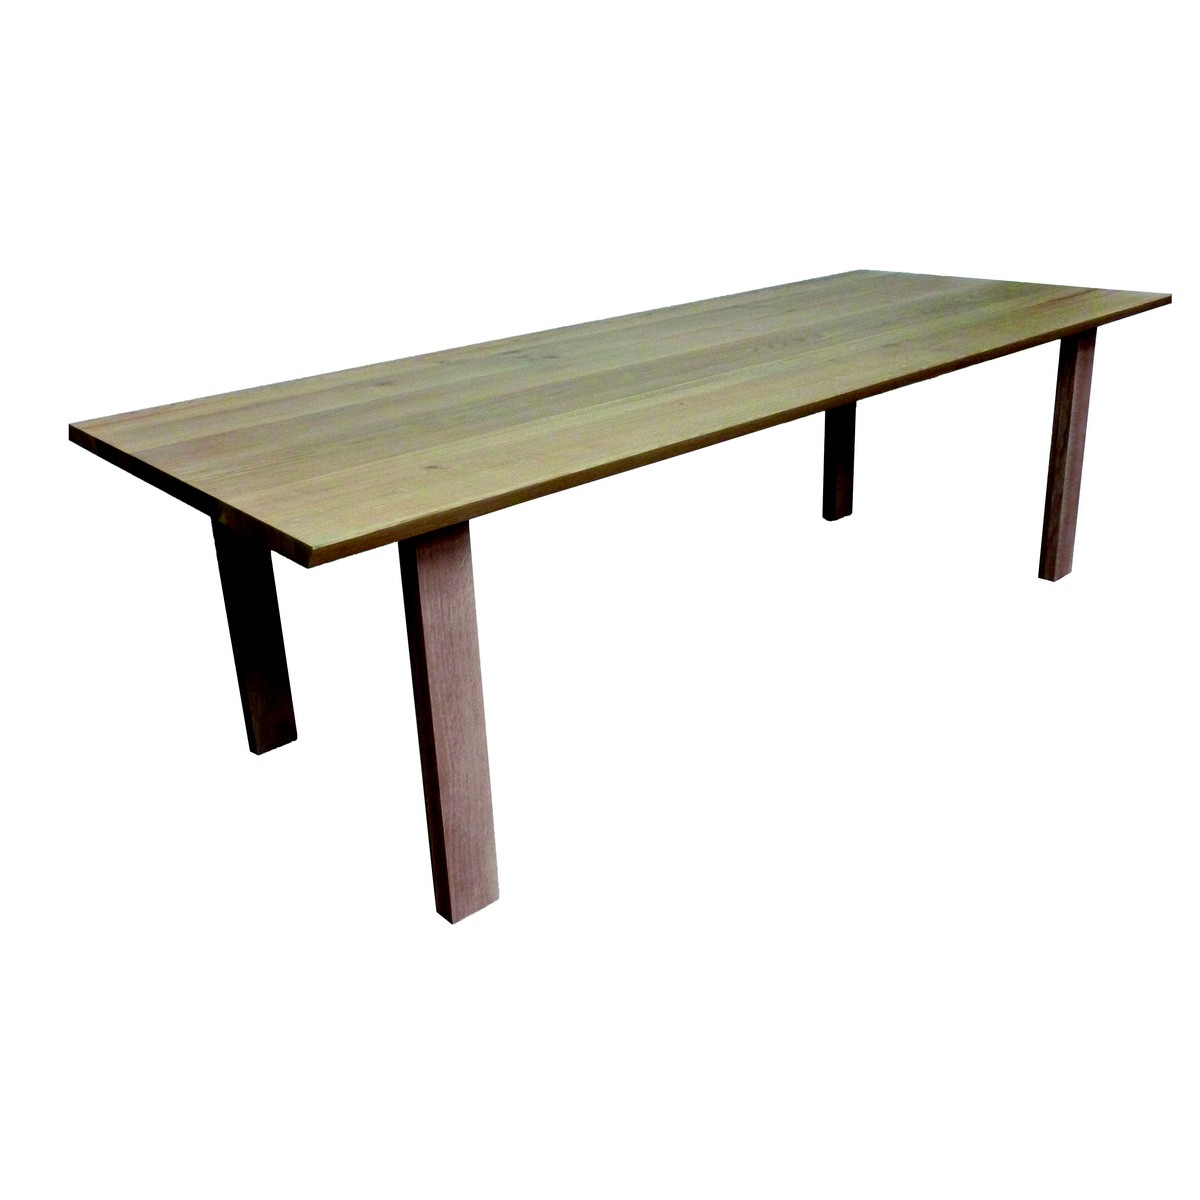   Table haute Cass Droit rectangulaire  160x100x90cm